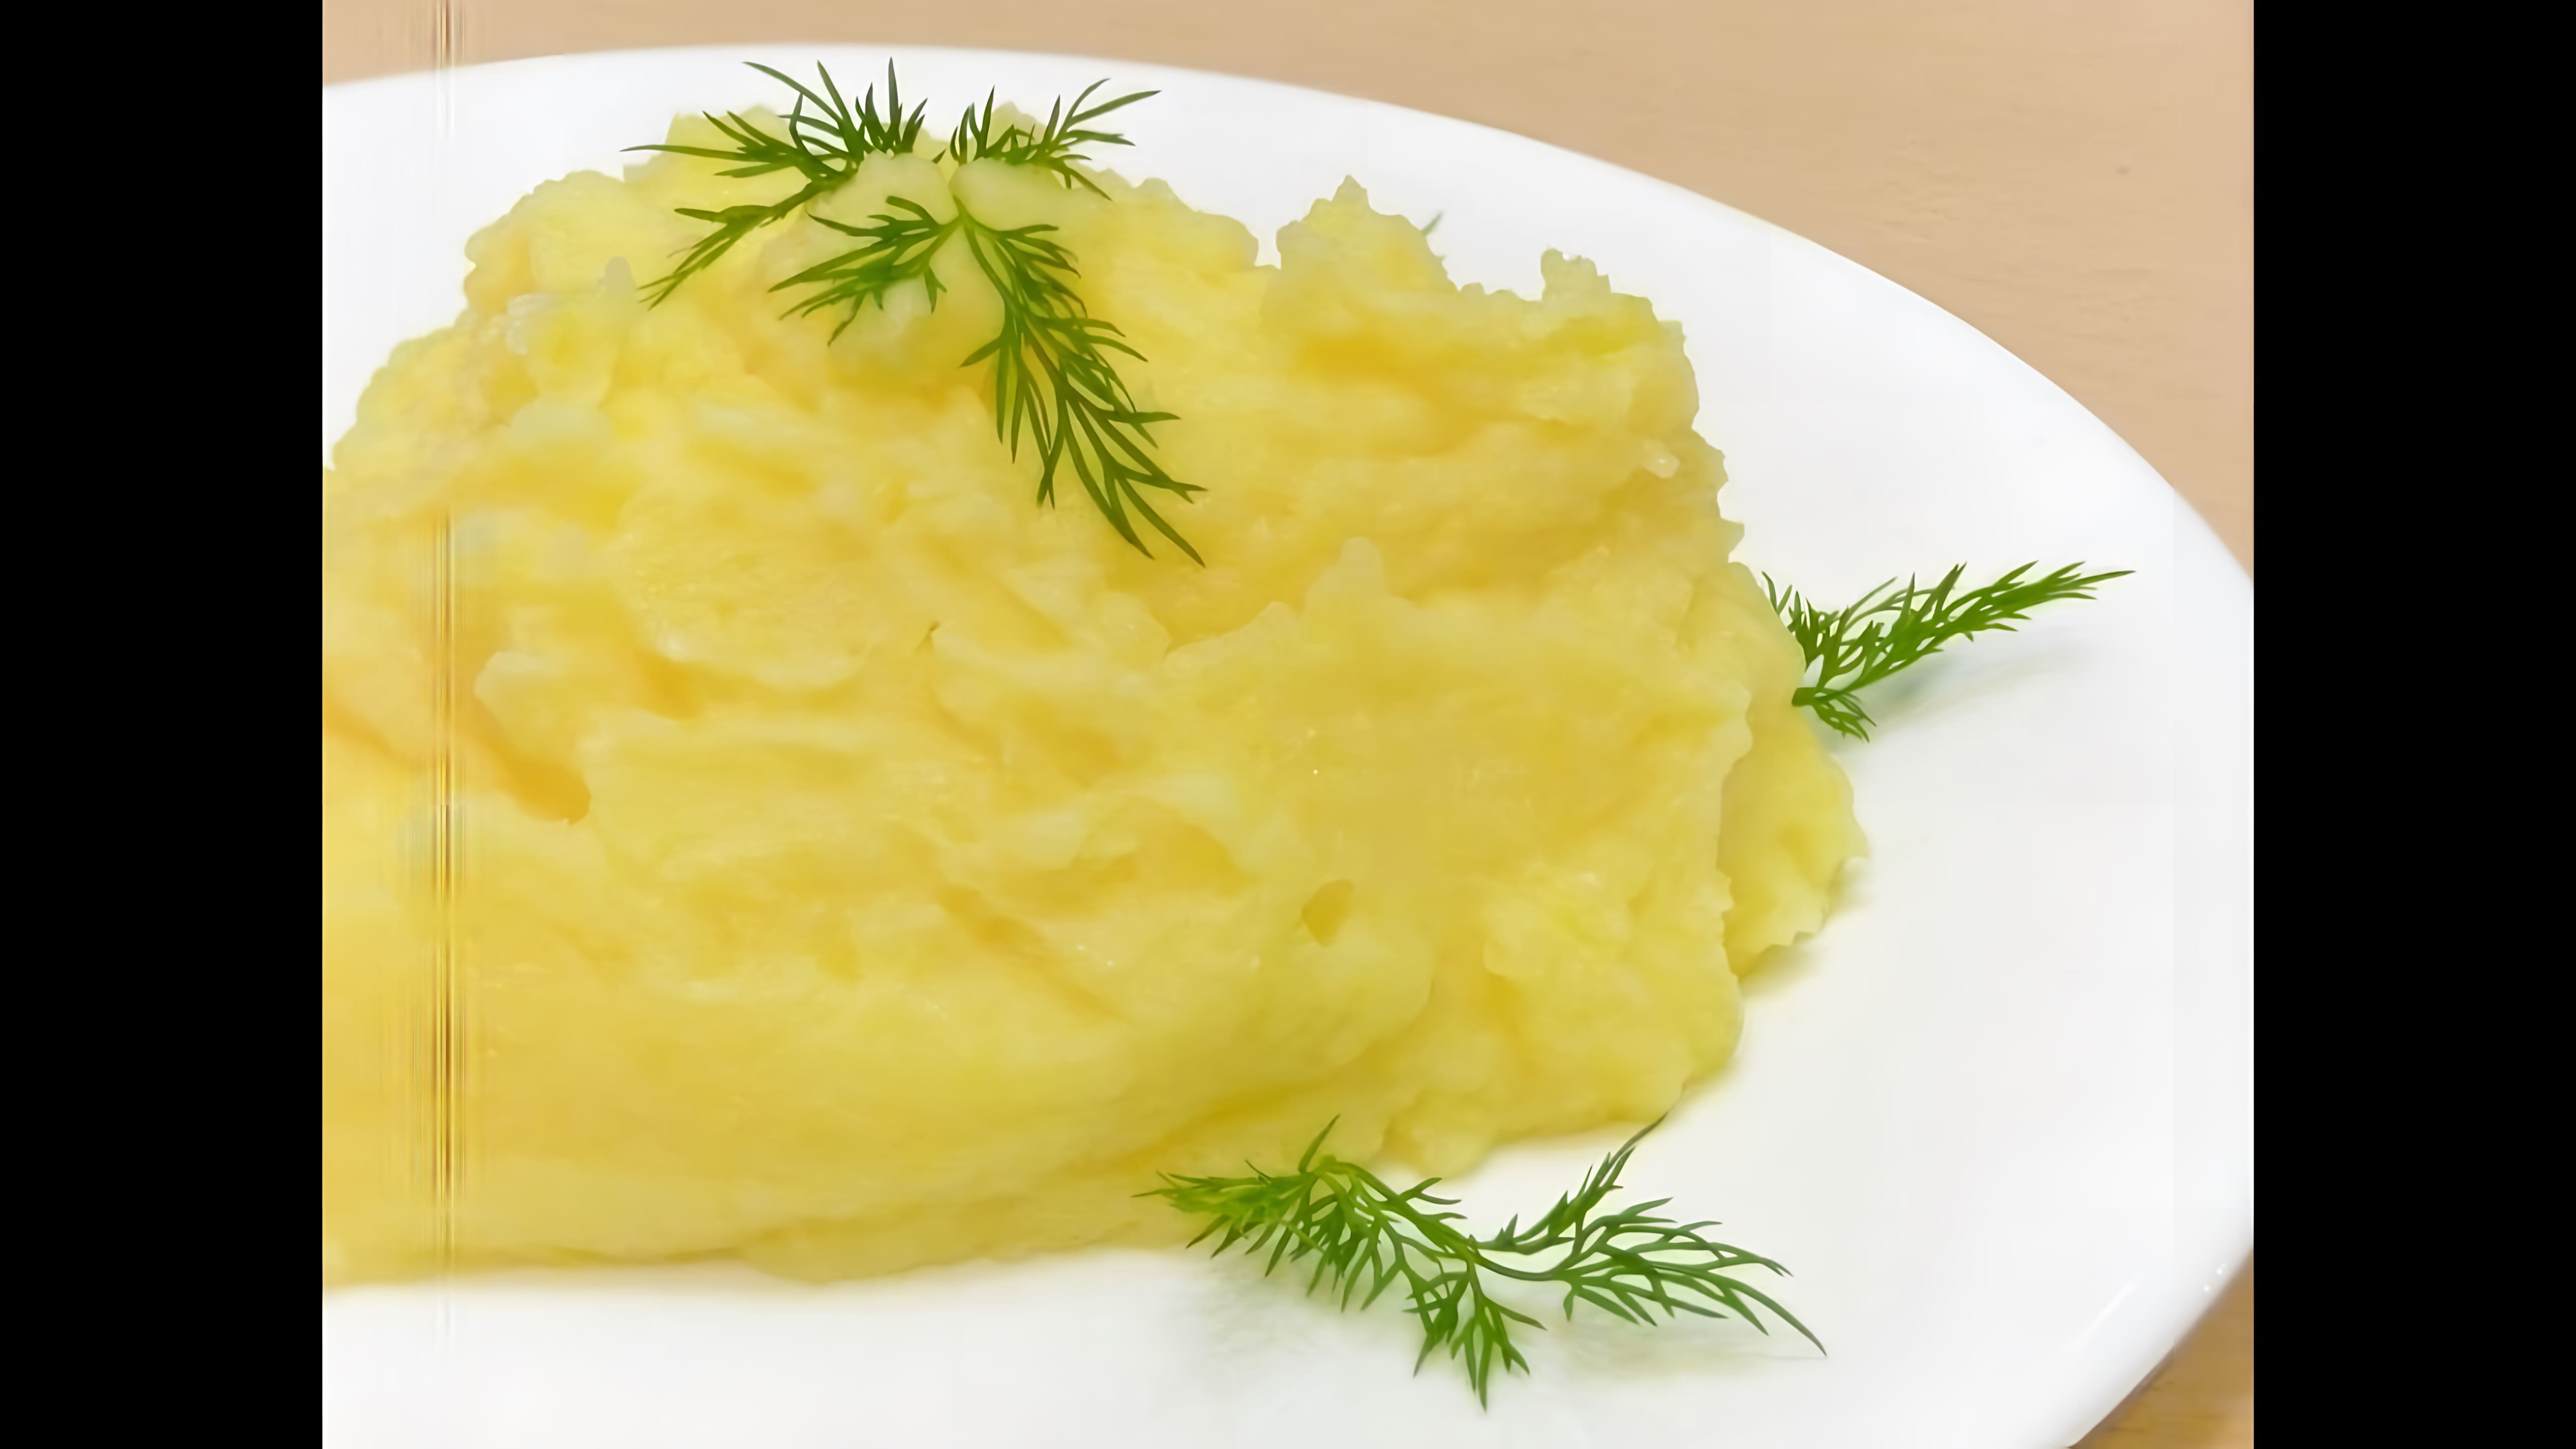 В этом видео демонстрируется процесс приготовления картофельного пюре